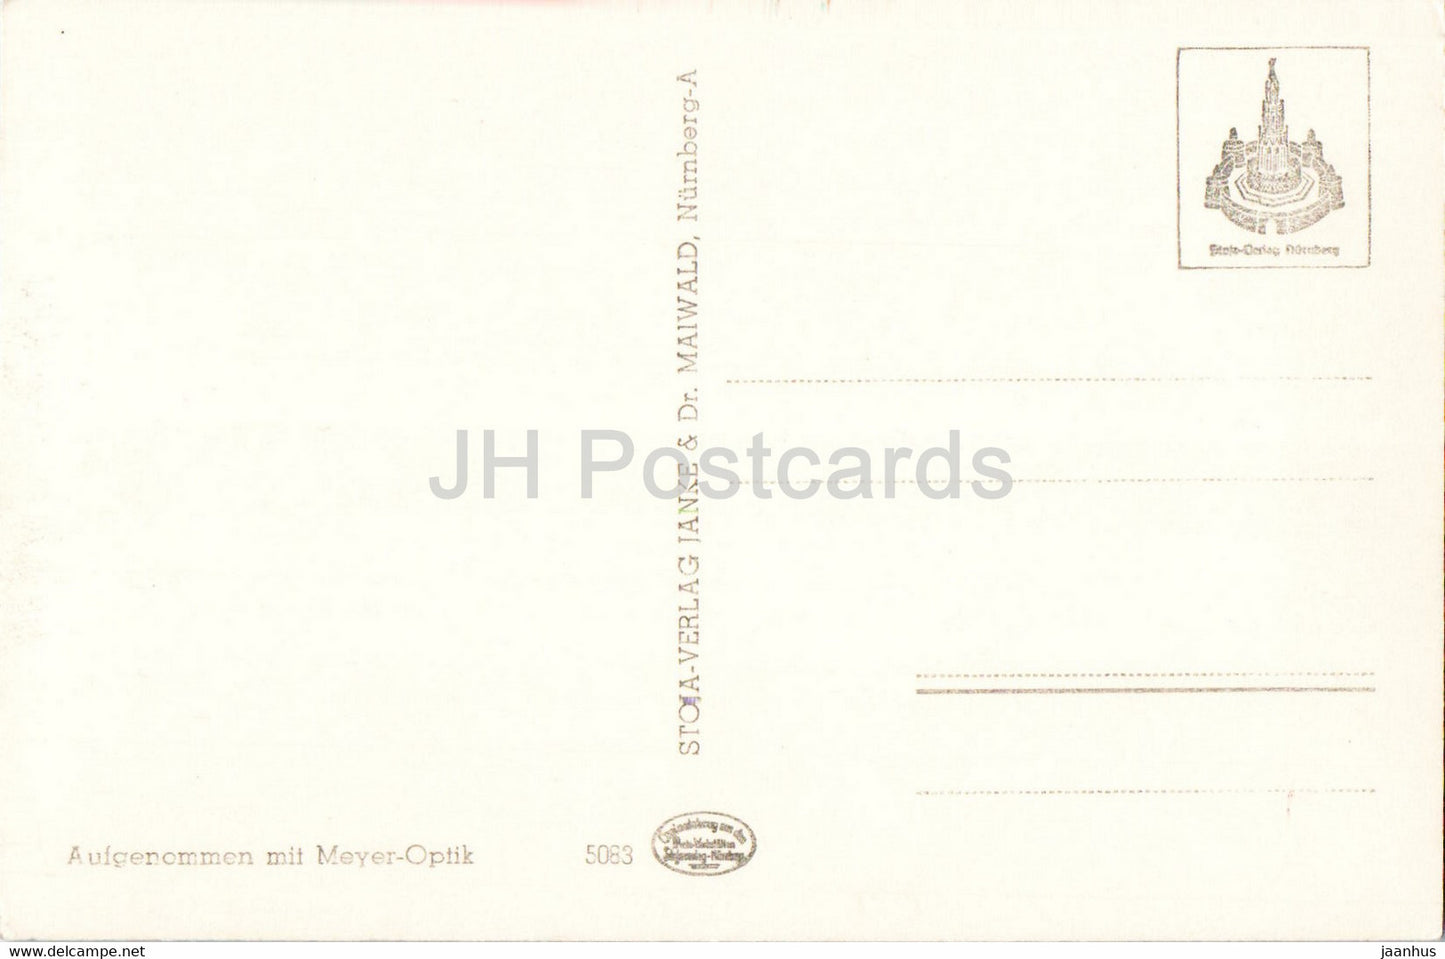 Nurnberg - Nuernberg - Hans Sachs Haus - old postcard - Germany - unused